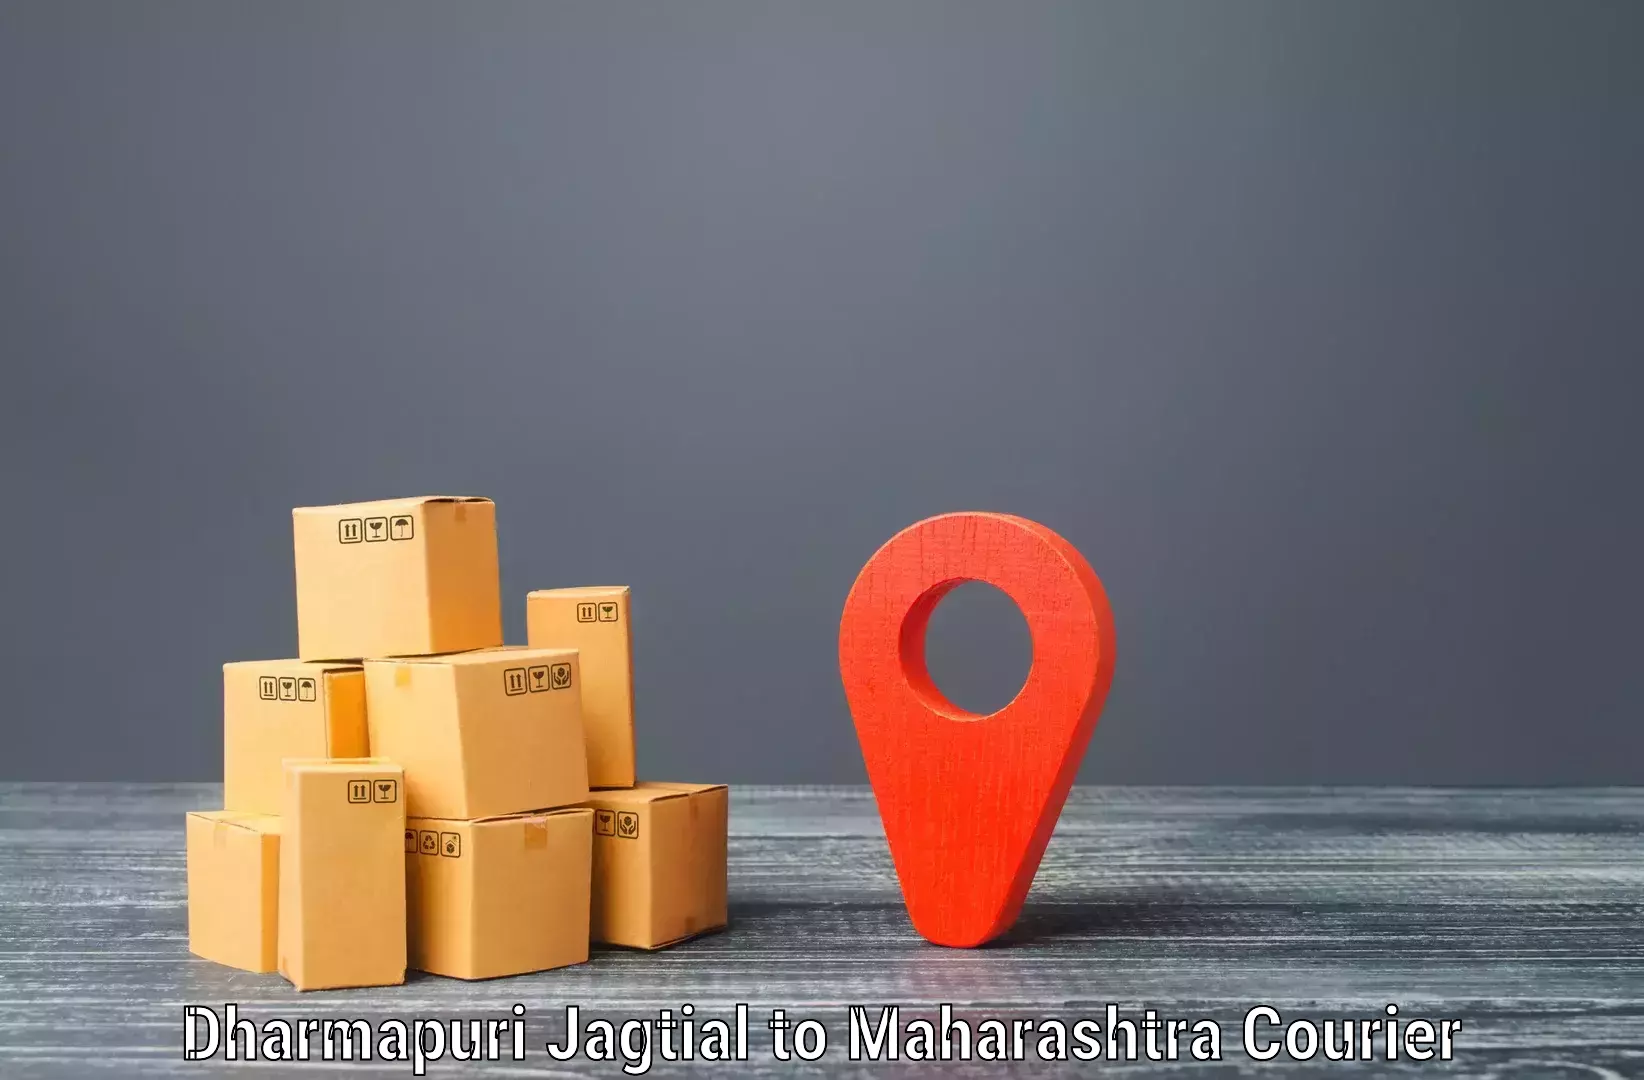 Premium courier services Dharmapuri Jagtial to Andheri